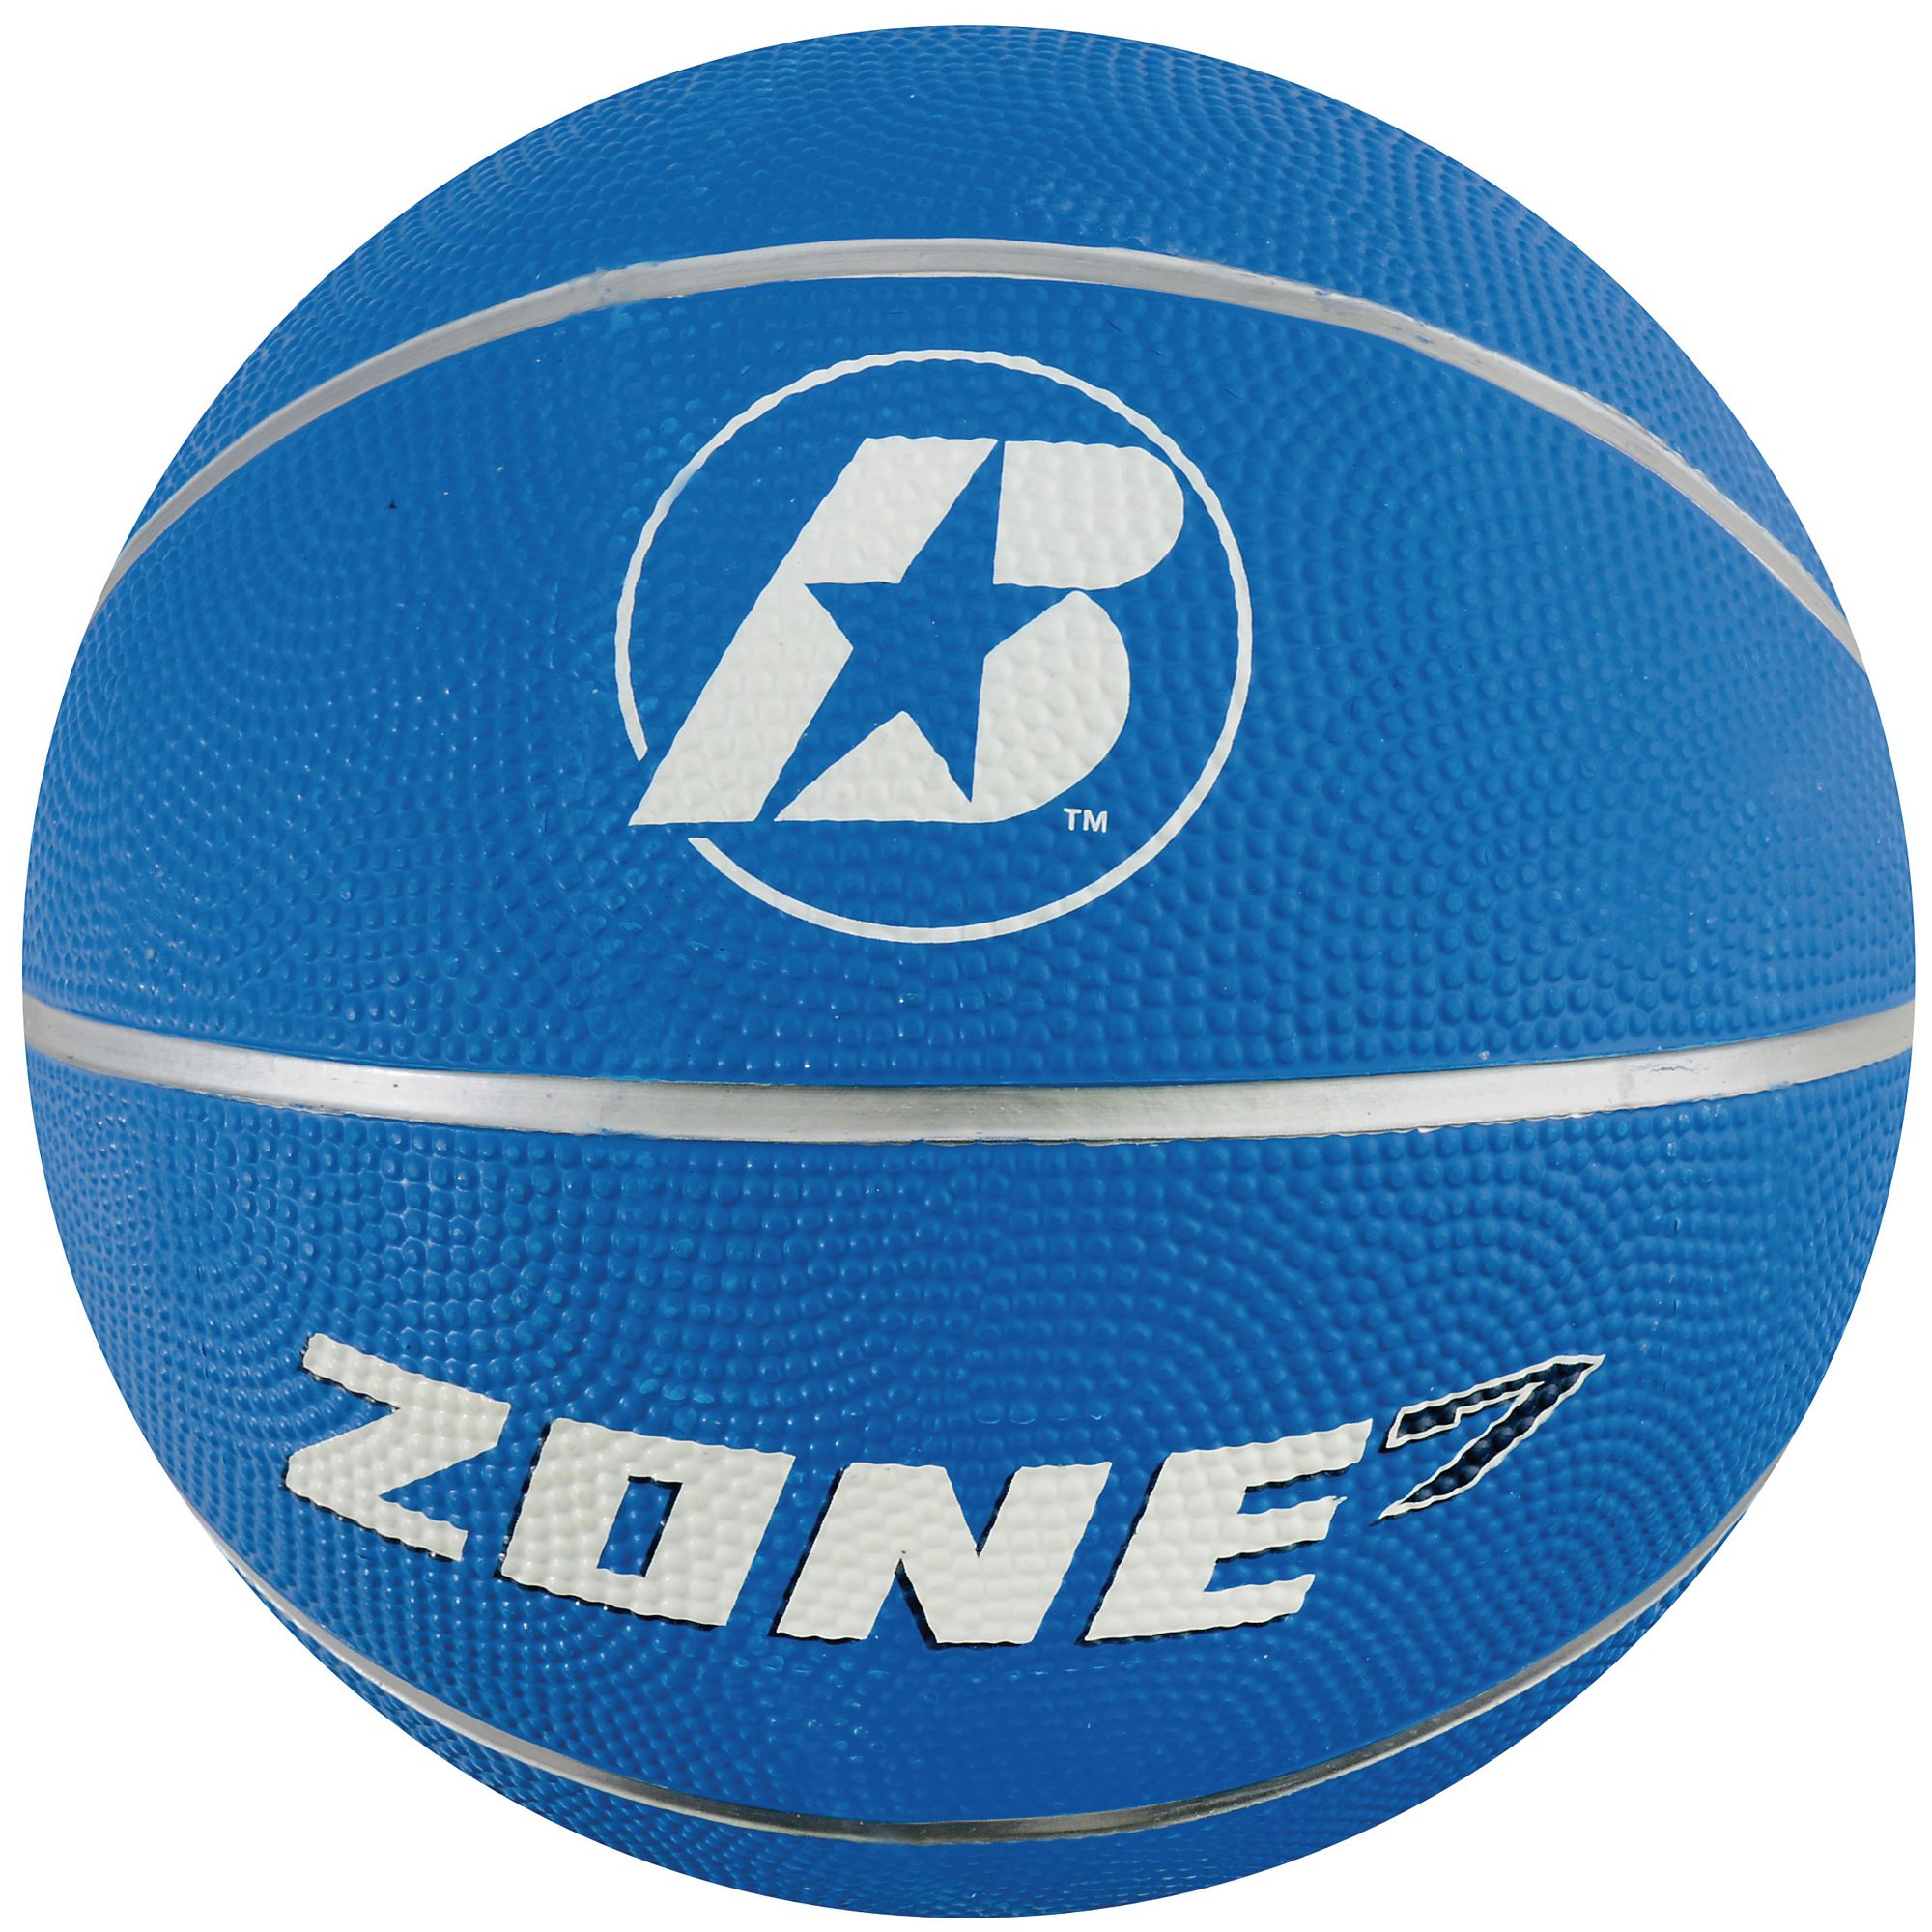 B?íden Zone Basketball - Blue - Size 7